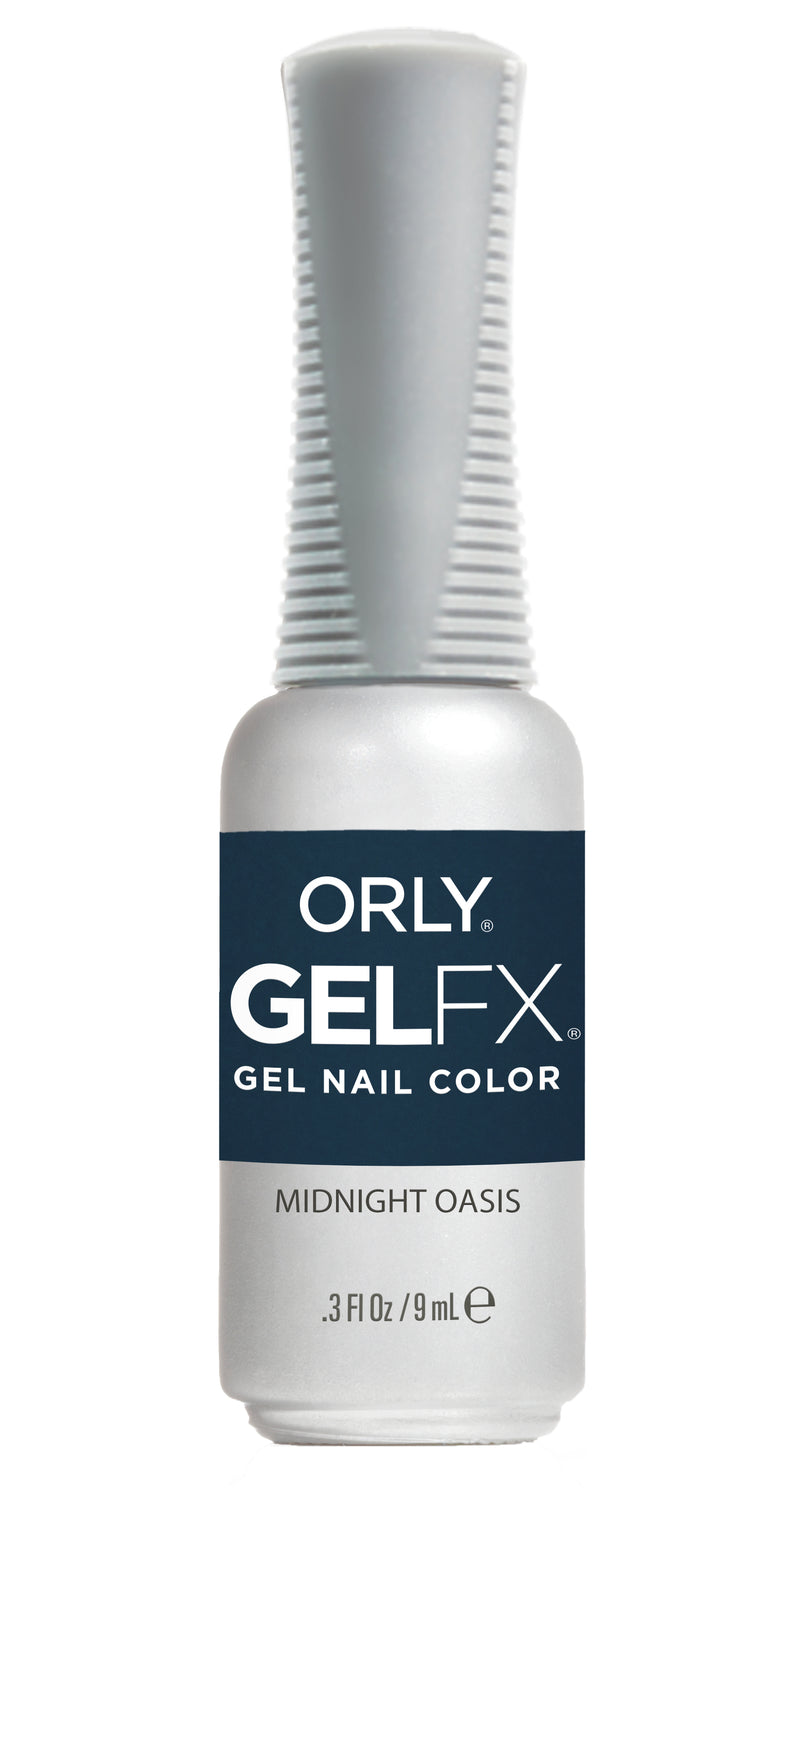 Orly Gel FX - Midnight Oasis Gel Polish